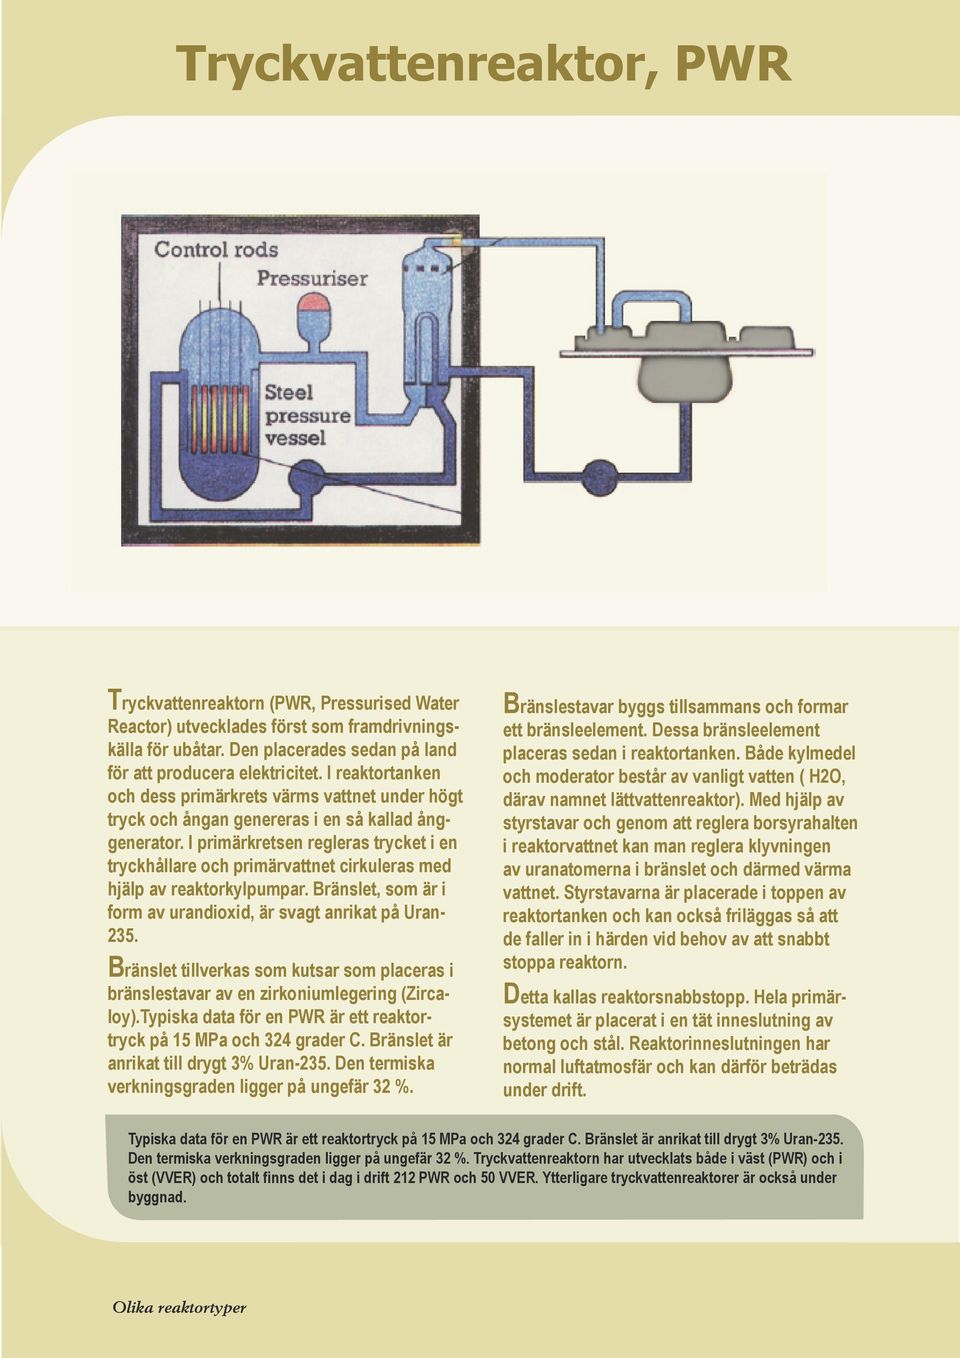 I primärkretsen regleras trycket i en tryckhållare och primärvattnet cirkuleras med hjälp av reaktorkylpumpar. Bränslet, som är i form av urandioxid, är svagt anrikat på Uran- 235.